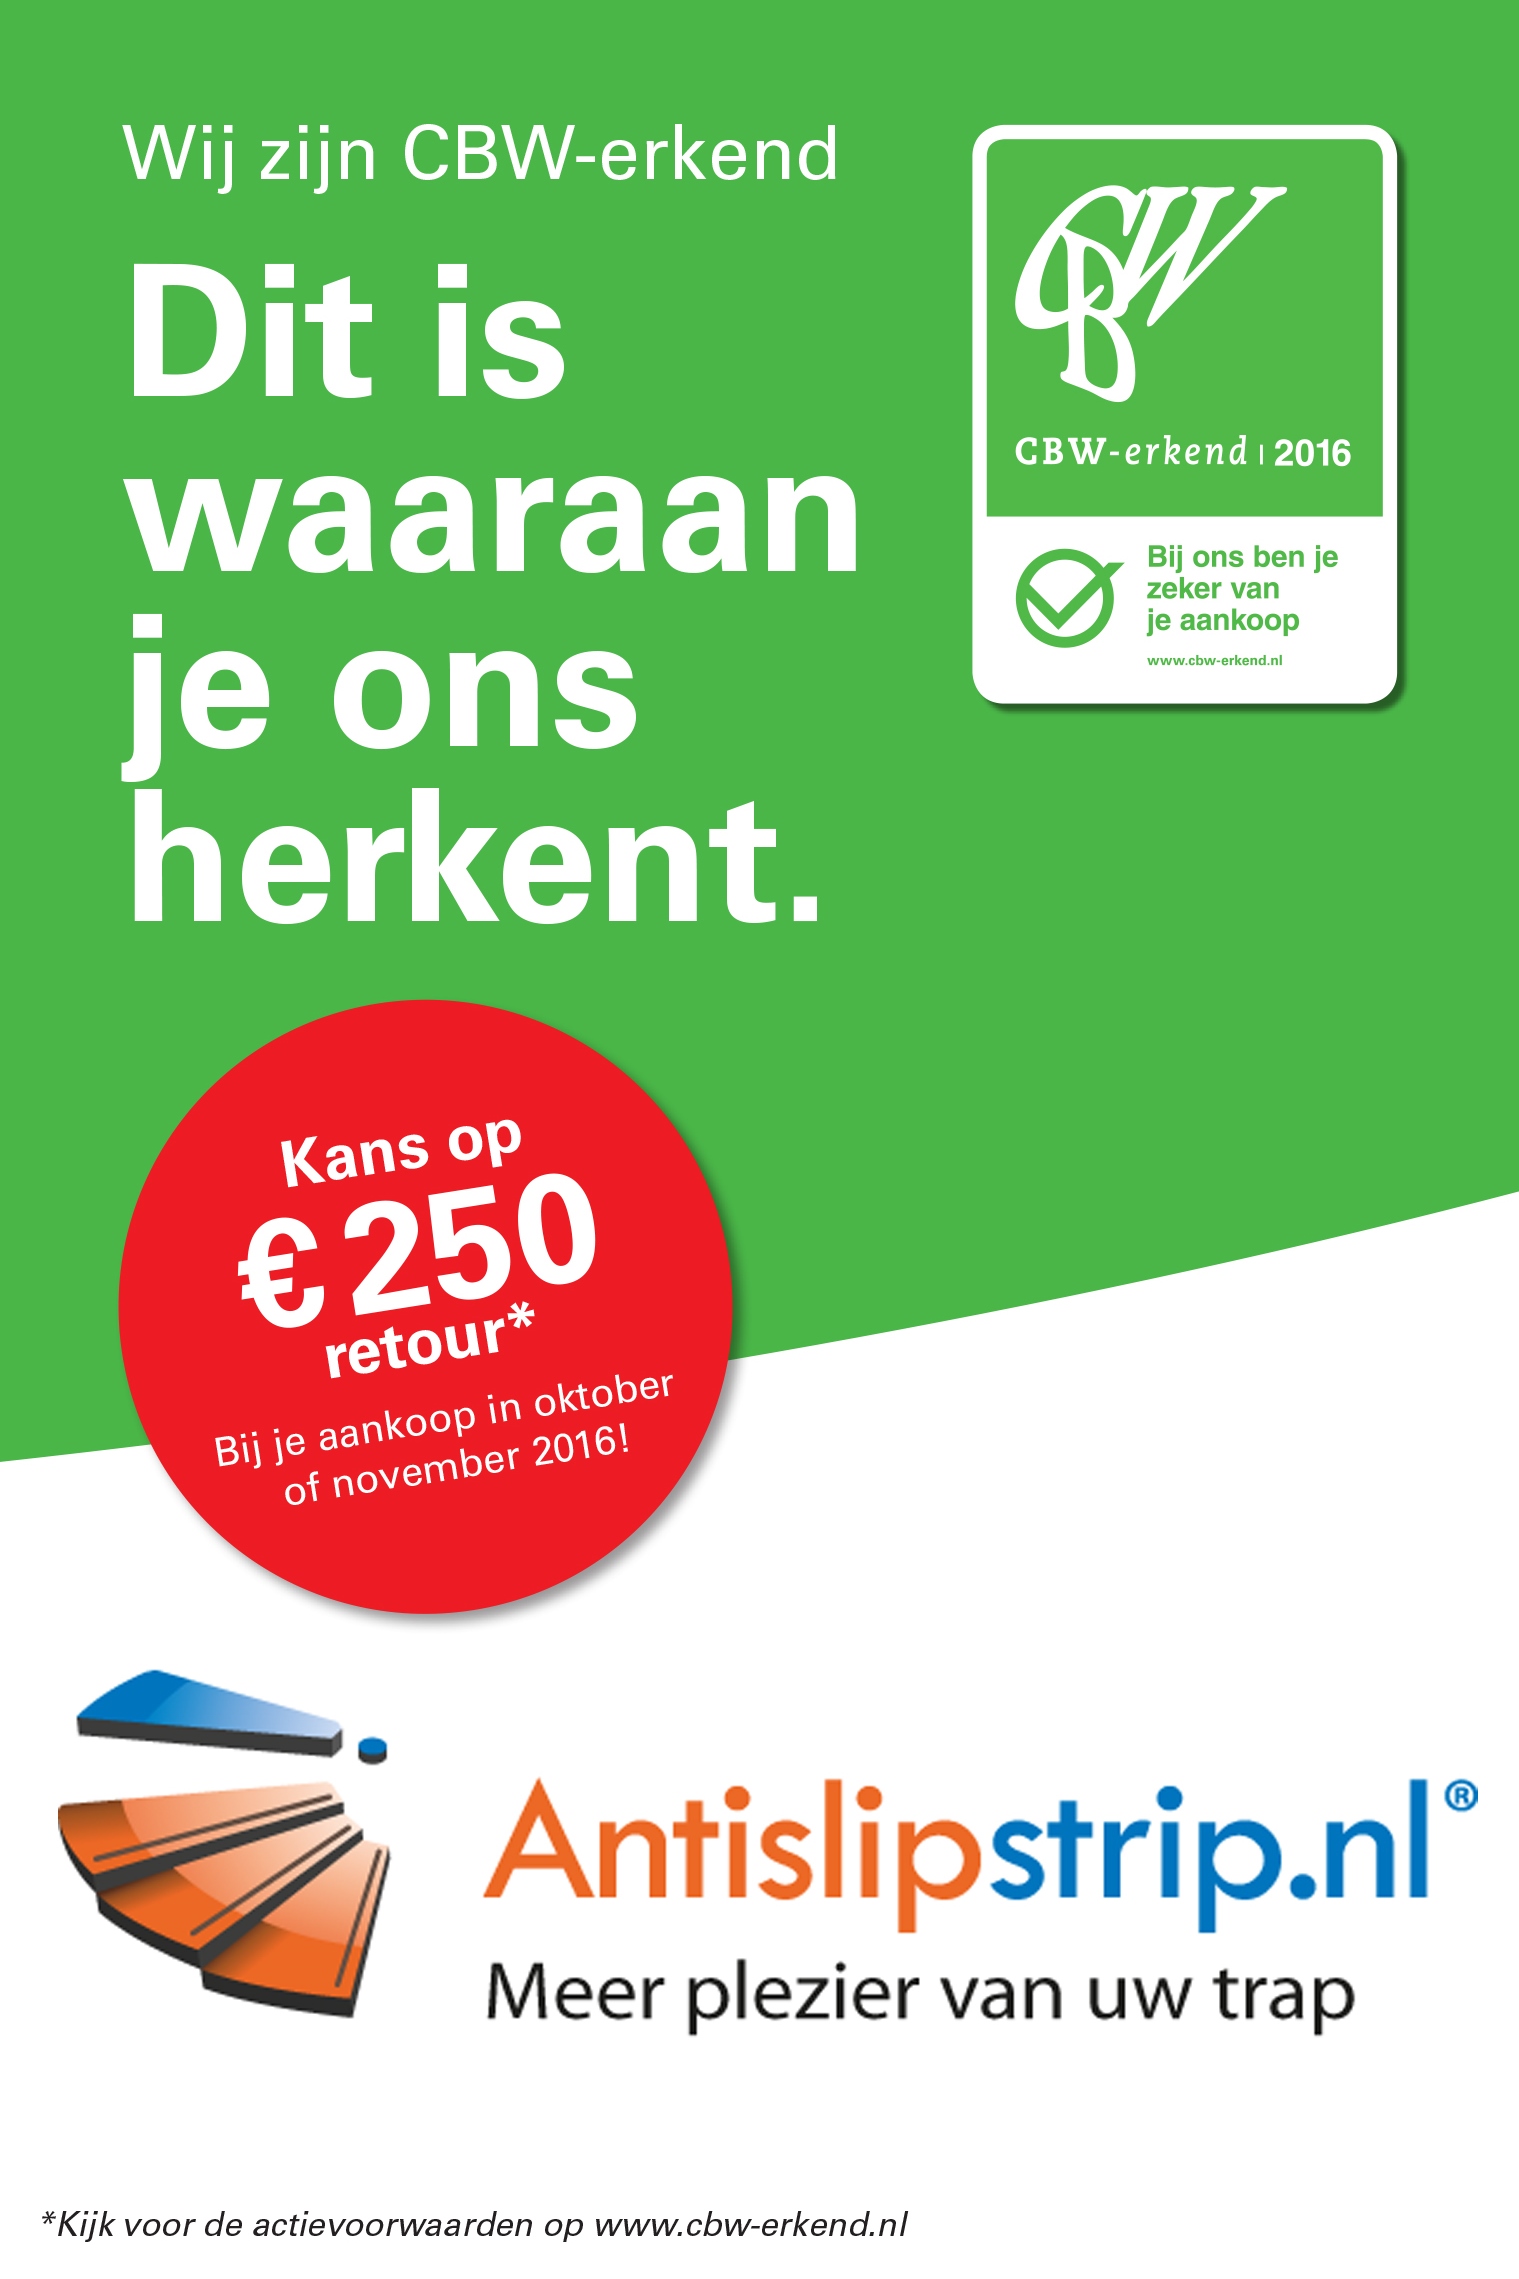 Antislipstrip.nl_CBW-erkend_actie